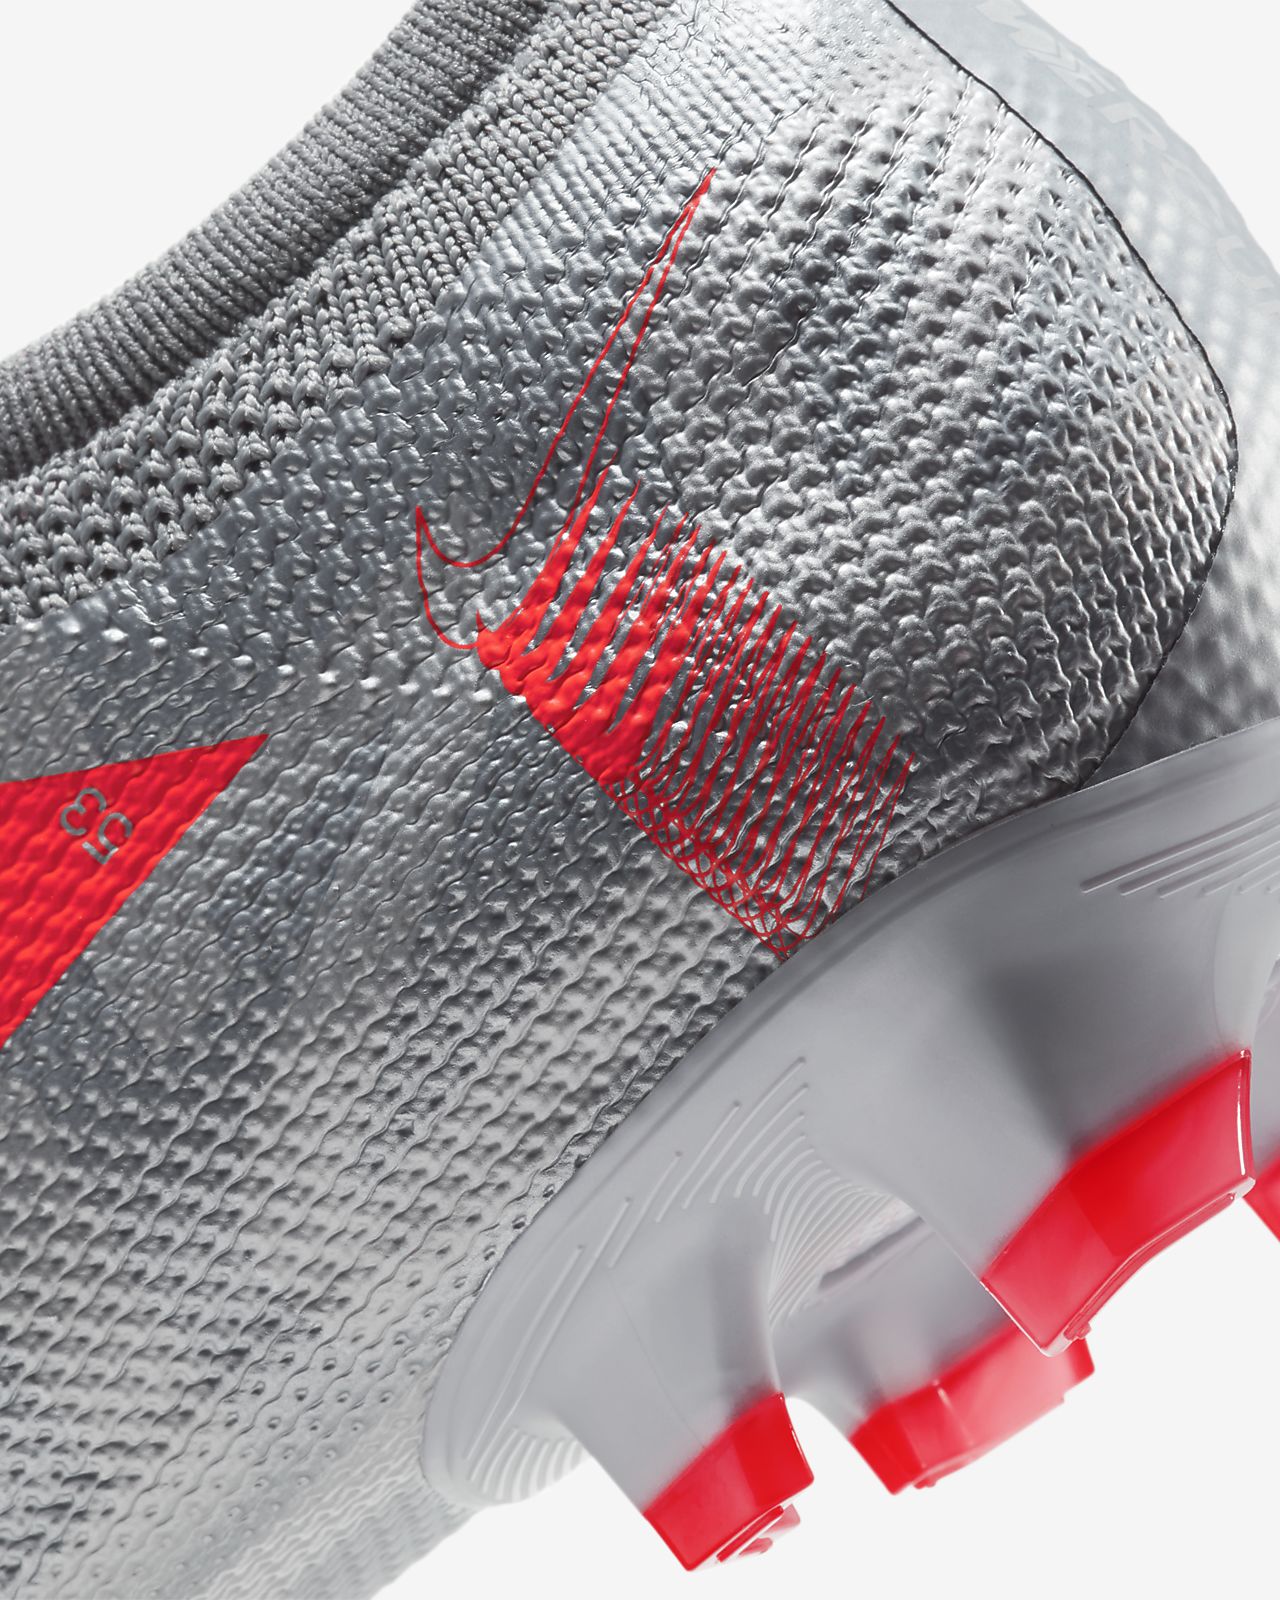 Nike Mercurial Vapor 13 Academy IC Indoor Soccer Shoe.